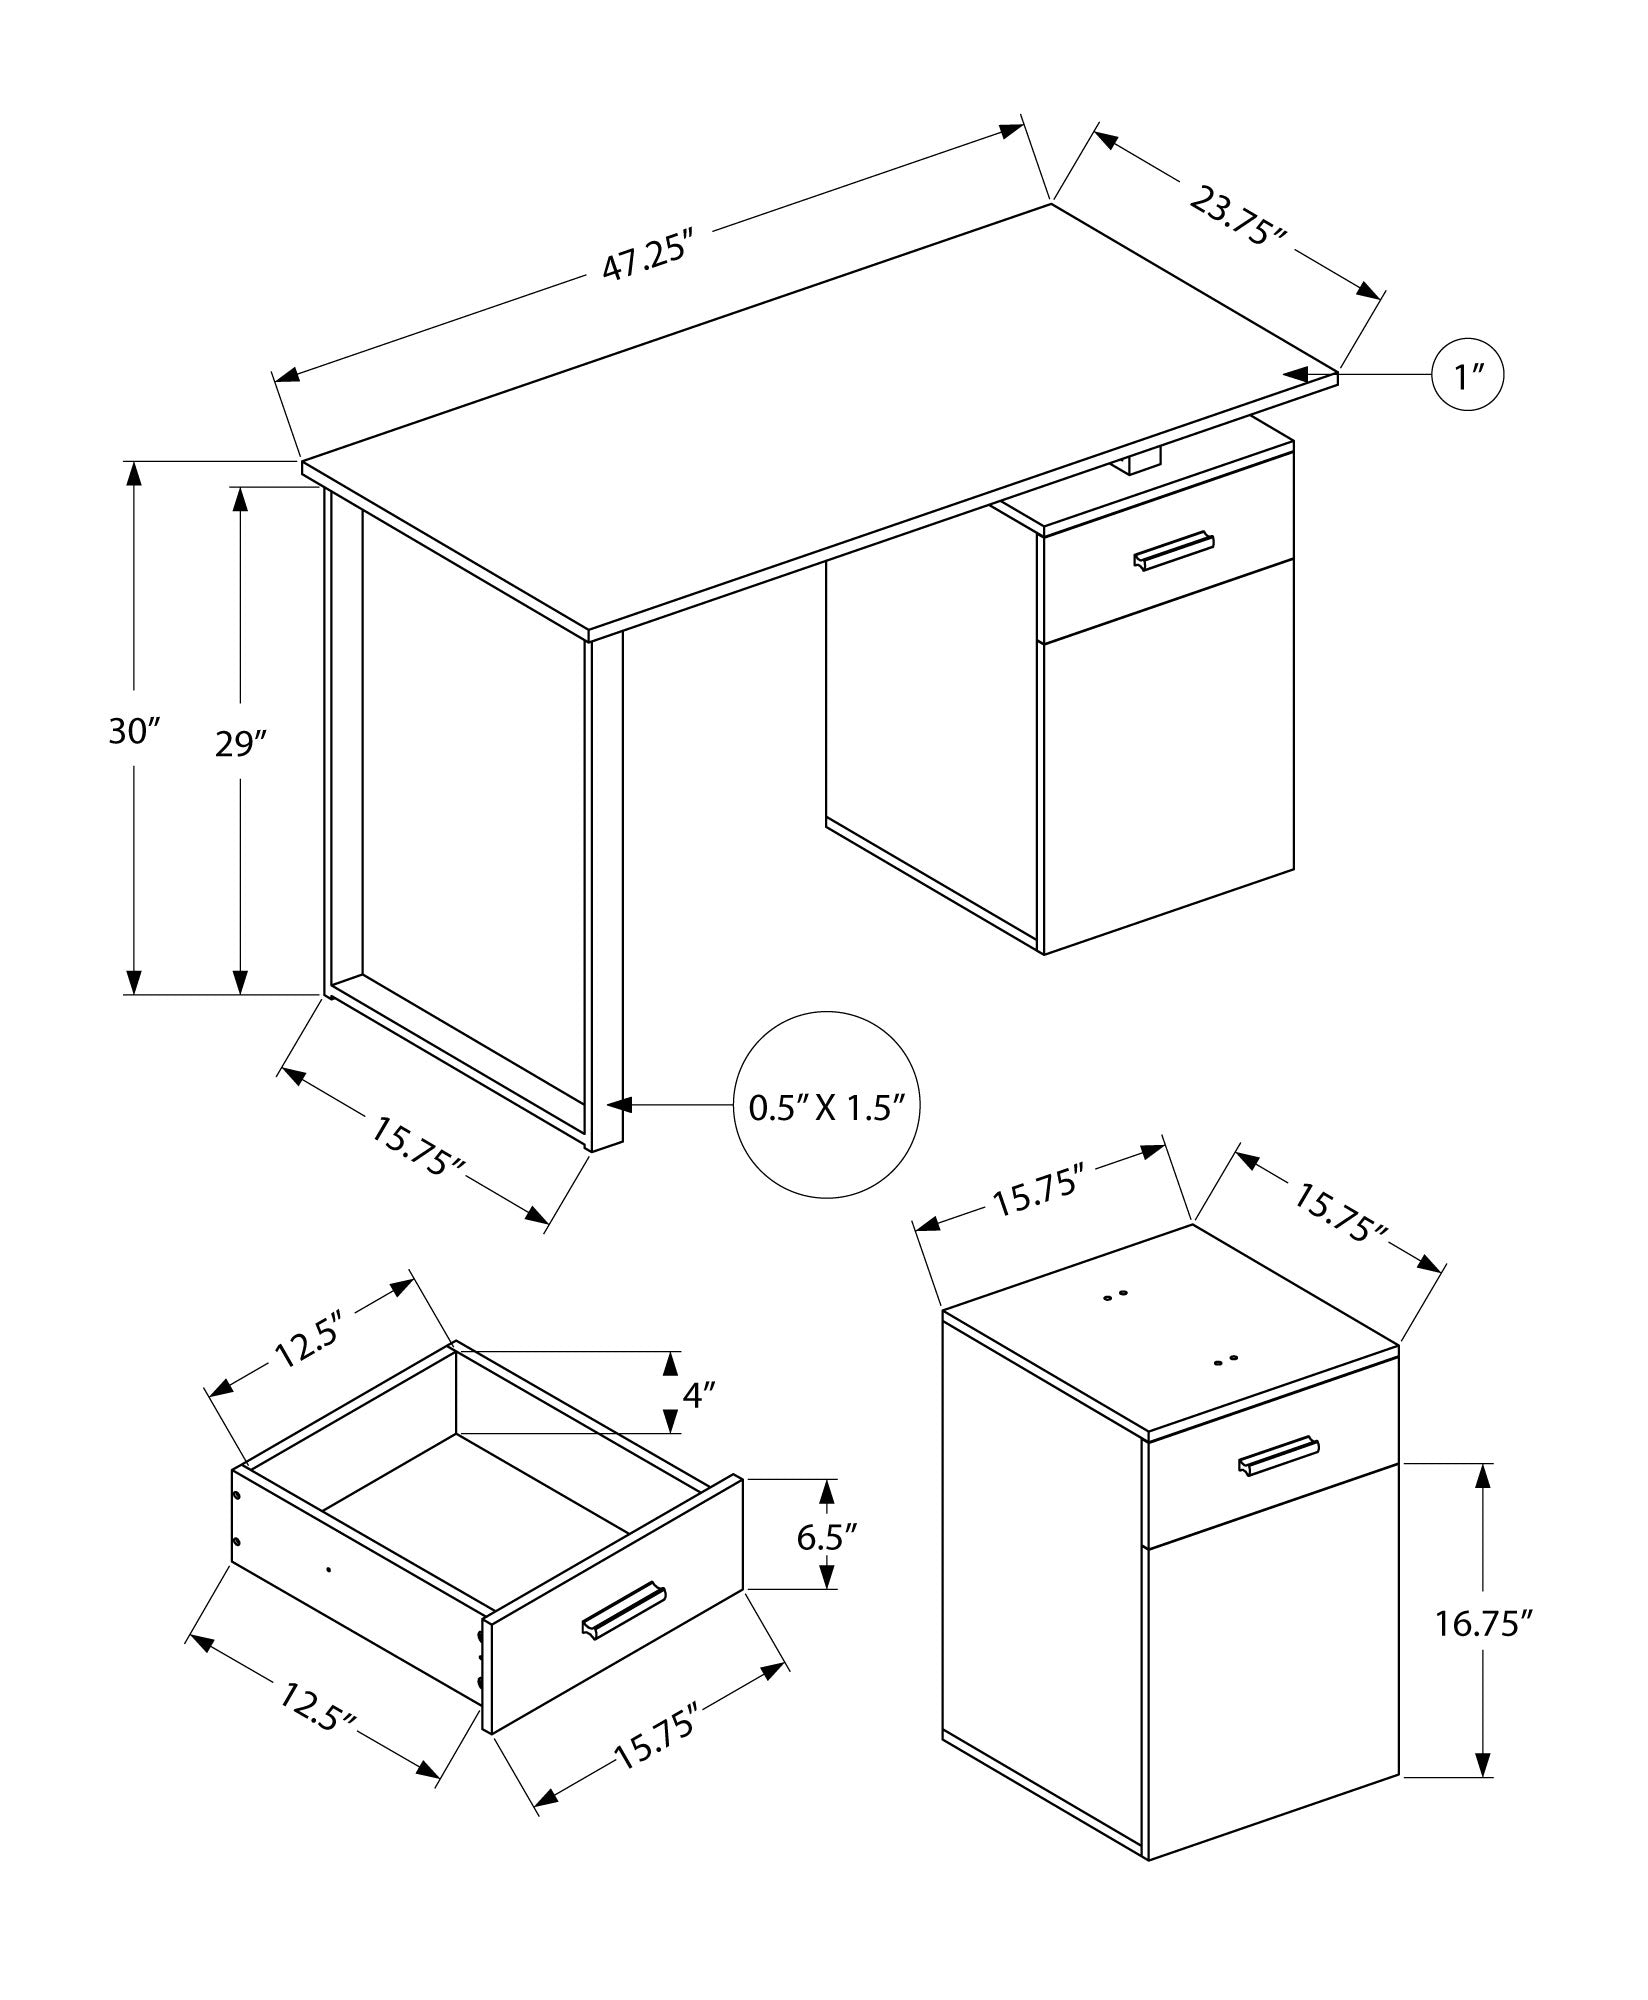 MN-187764    Computer Desk - Storage Drawer / Cabinet / Left Or Right Setup / Floating Desktop - 48"L - Dark Taupe / Black